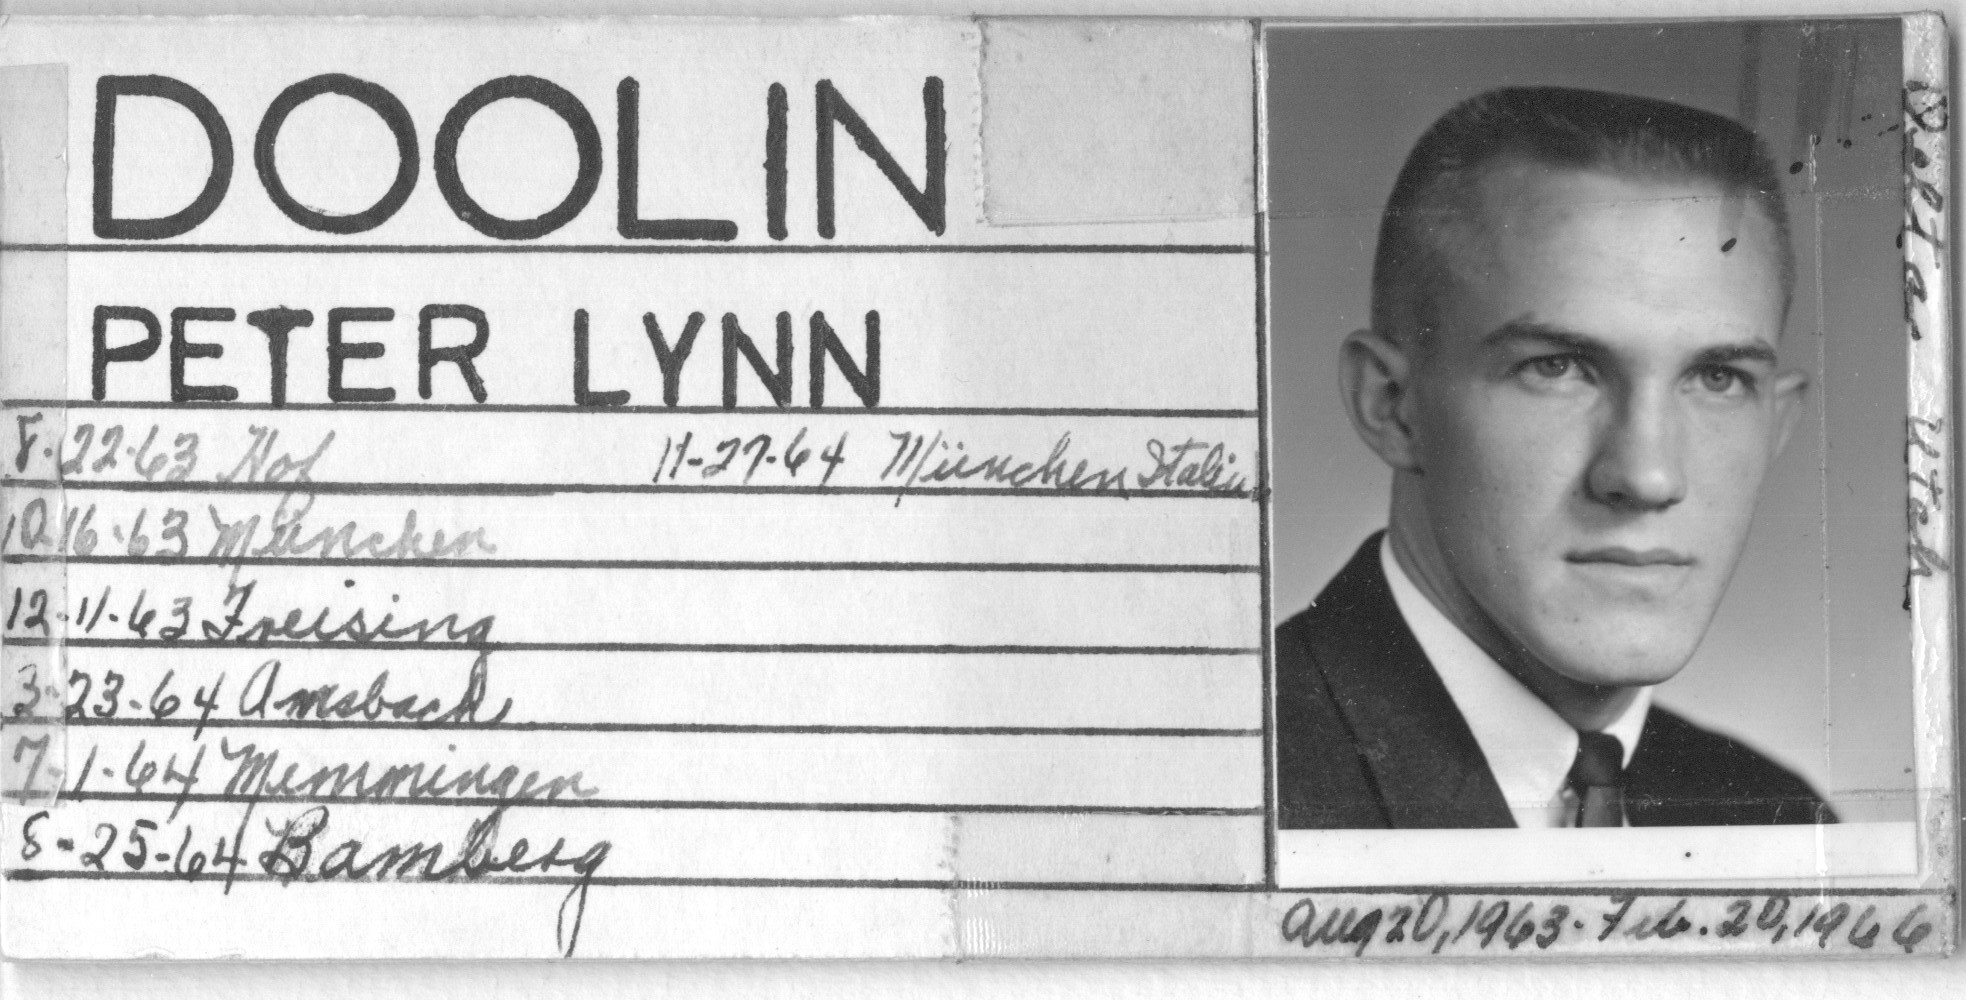 Doolin, Peter Lynn